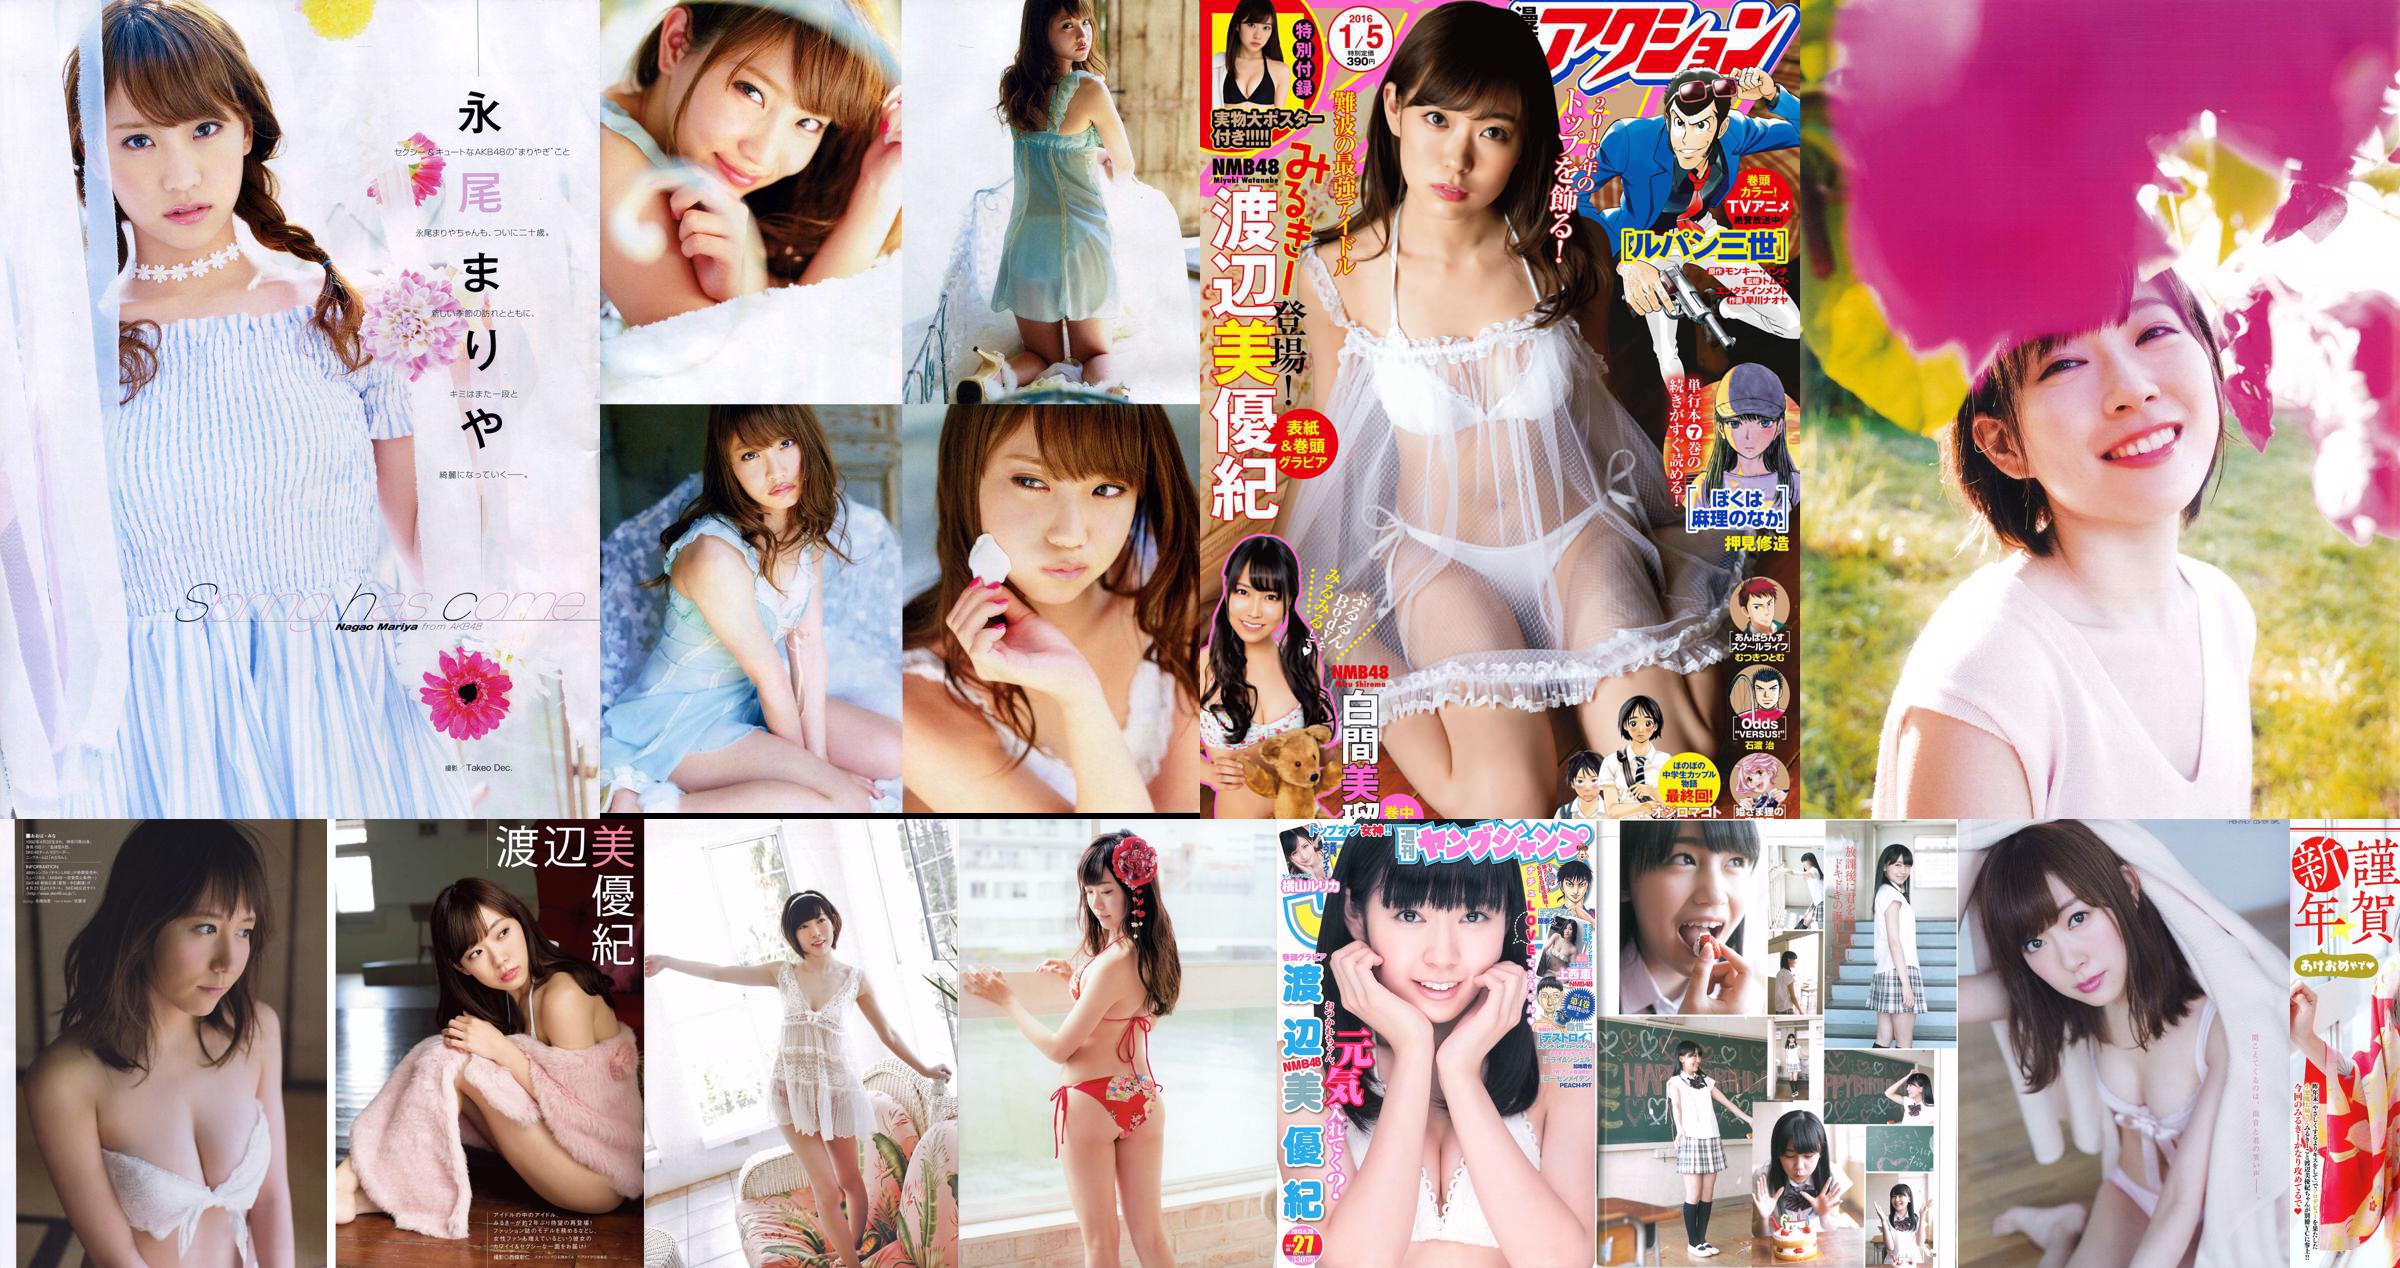 Watanabe Miyuki Murokanako Murase Saei Shibuya Naisaki [Young Animal] 2013 No.13 Photo Magazine No.130625 Page 1